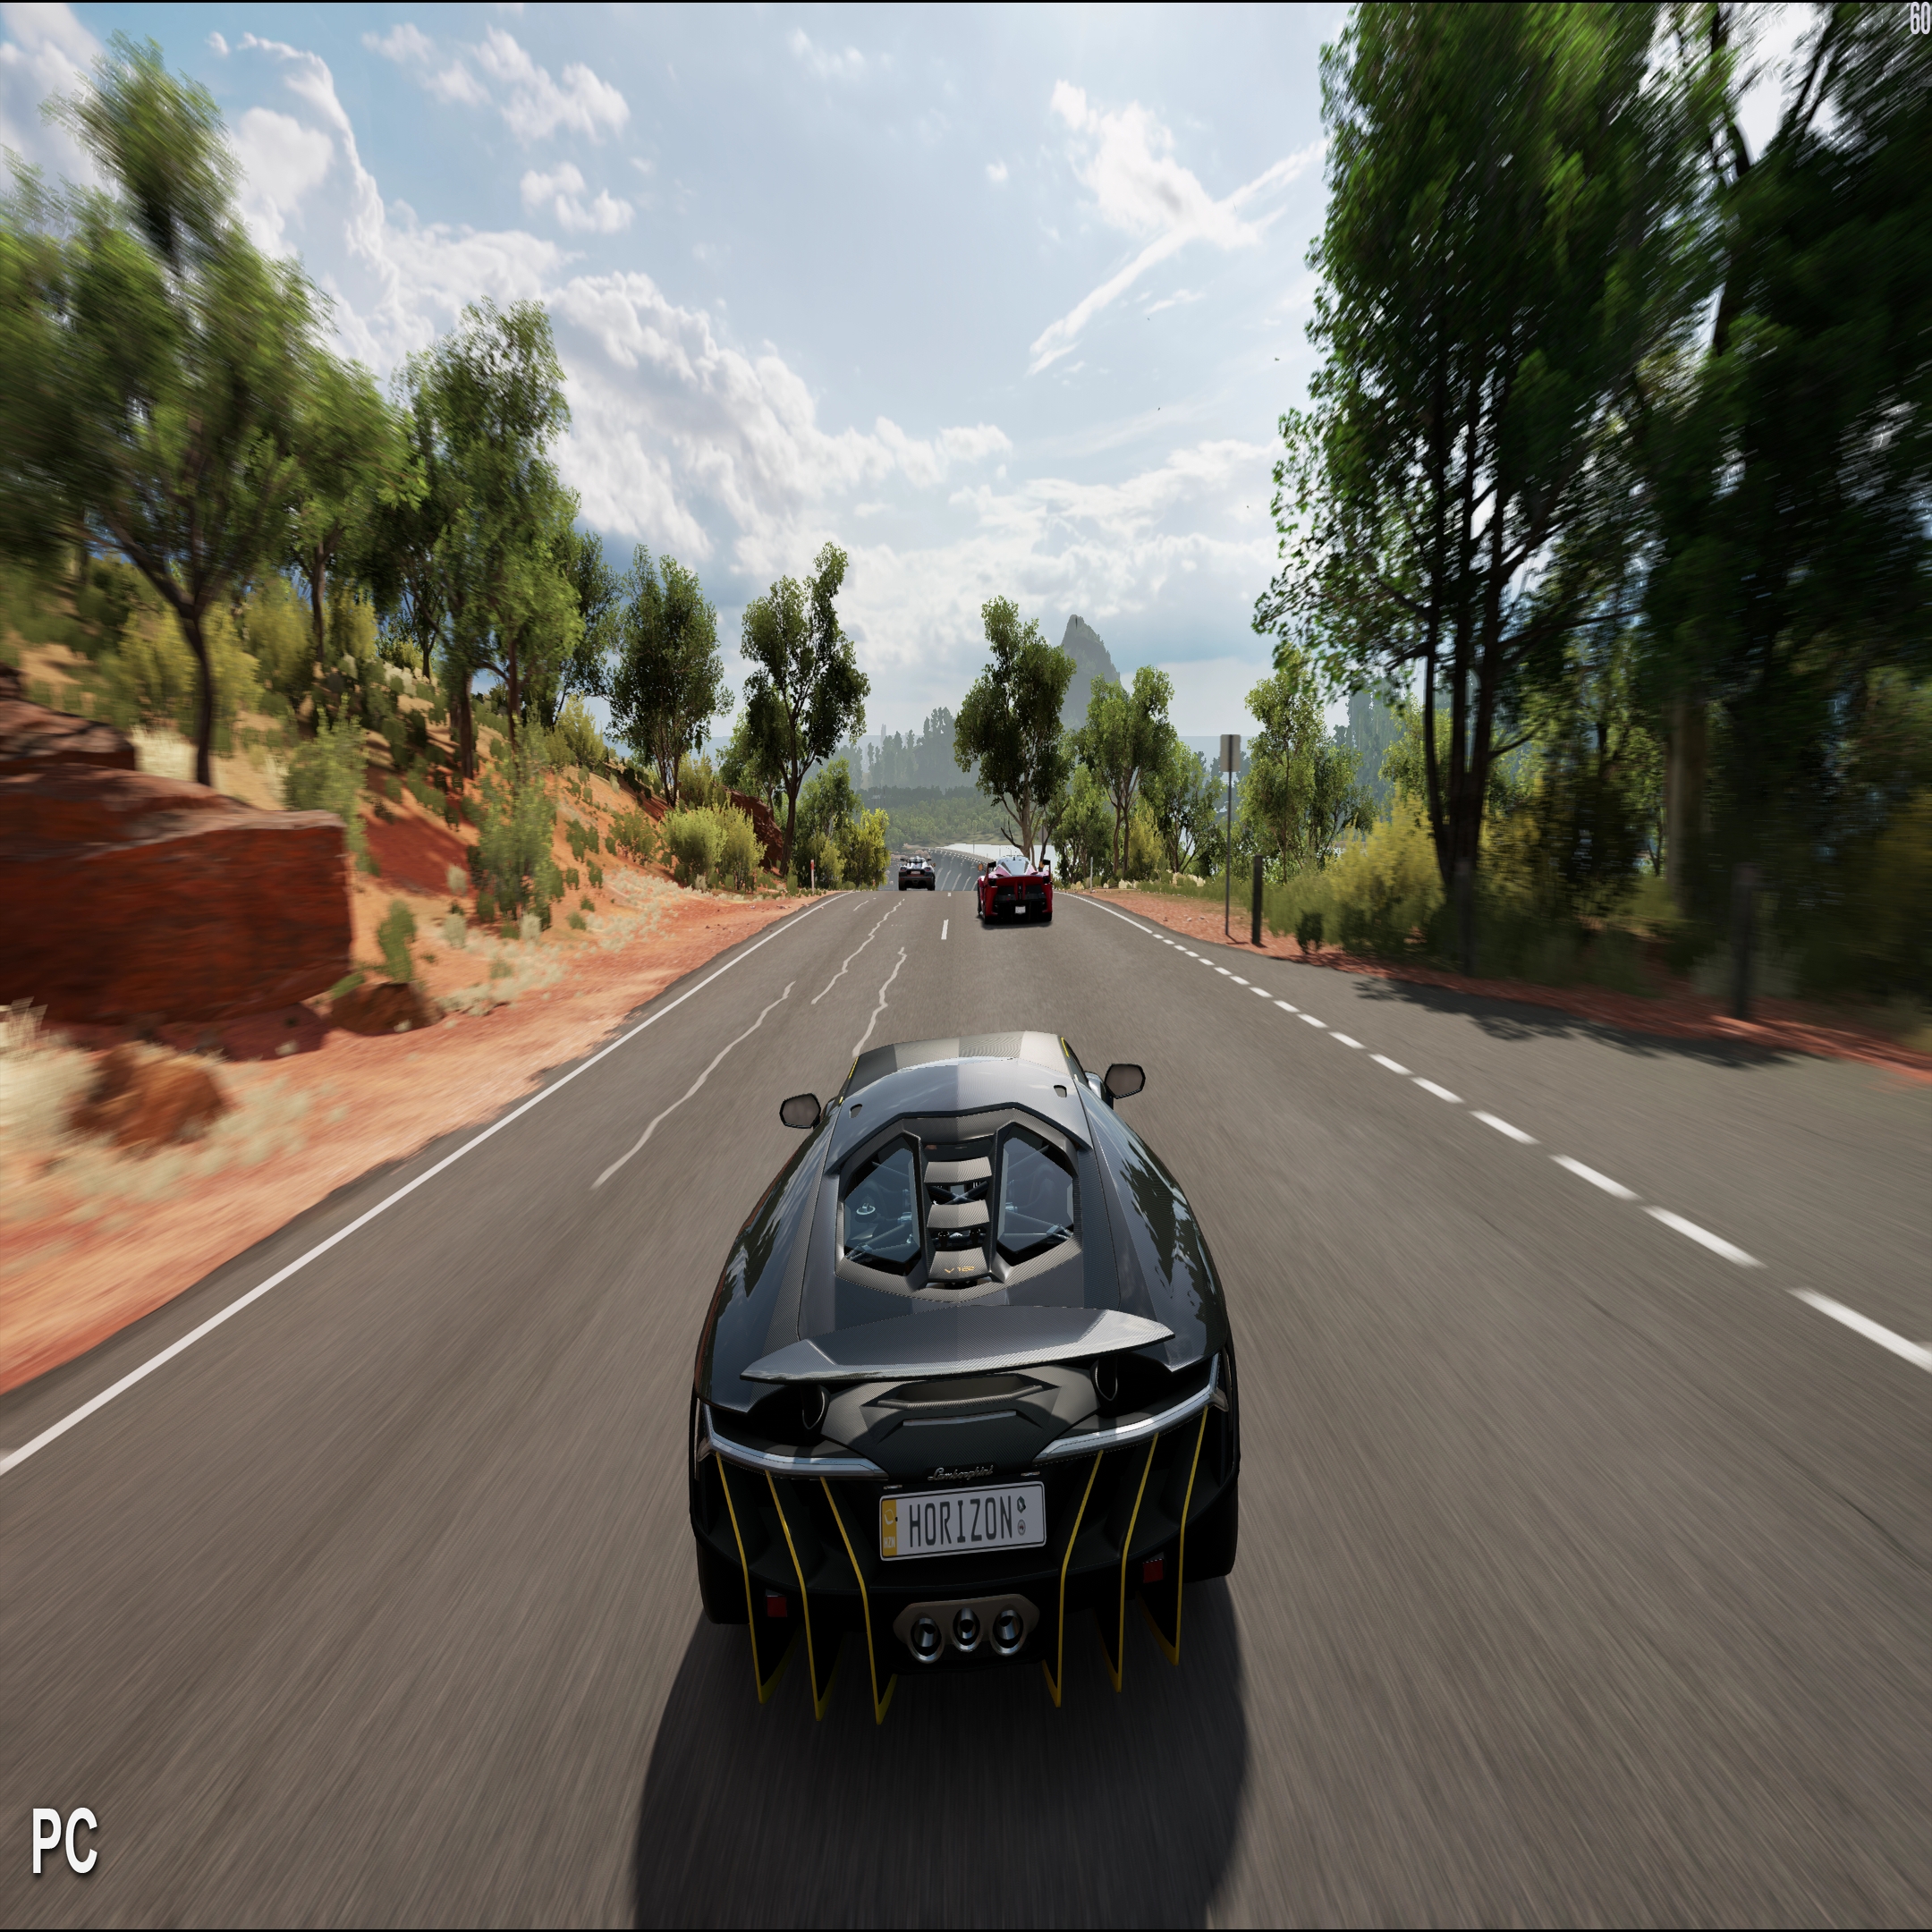 Forza Horizon 3 (for PC)